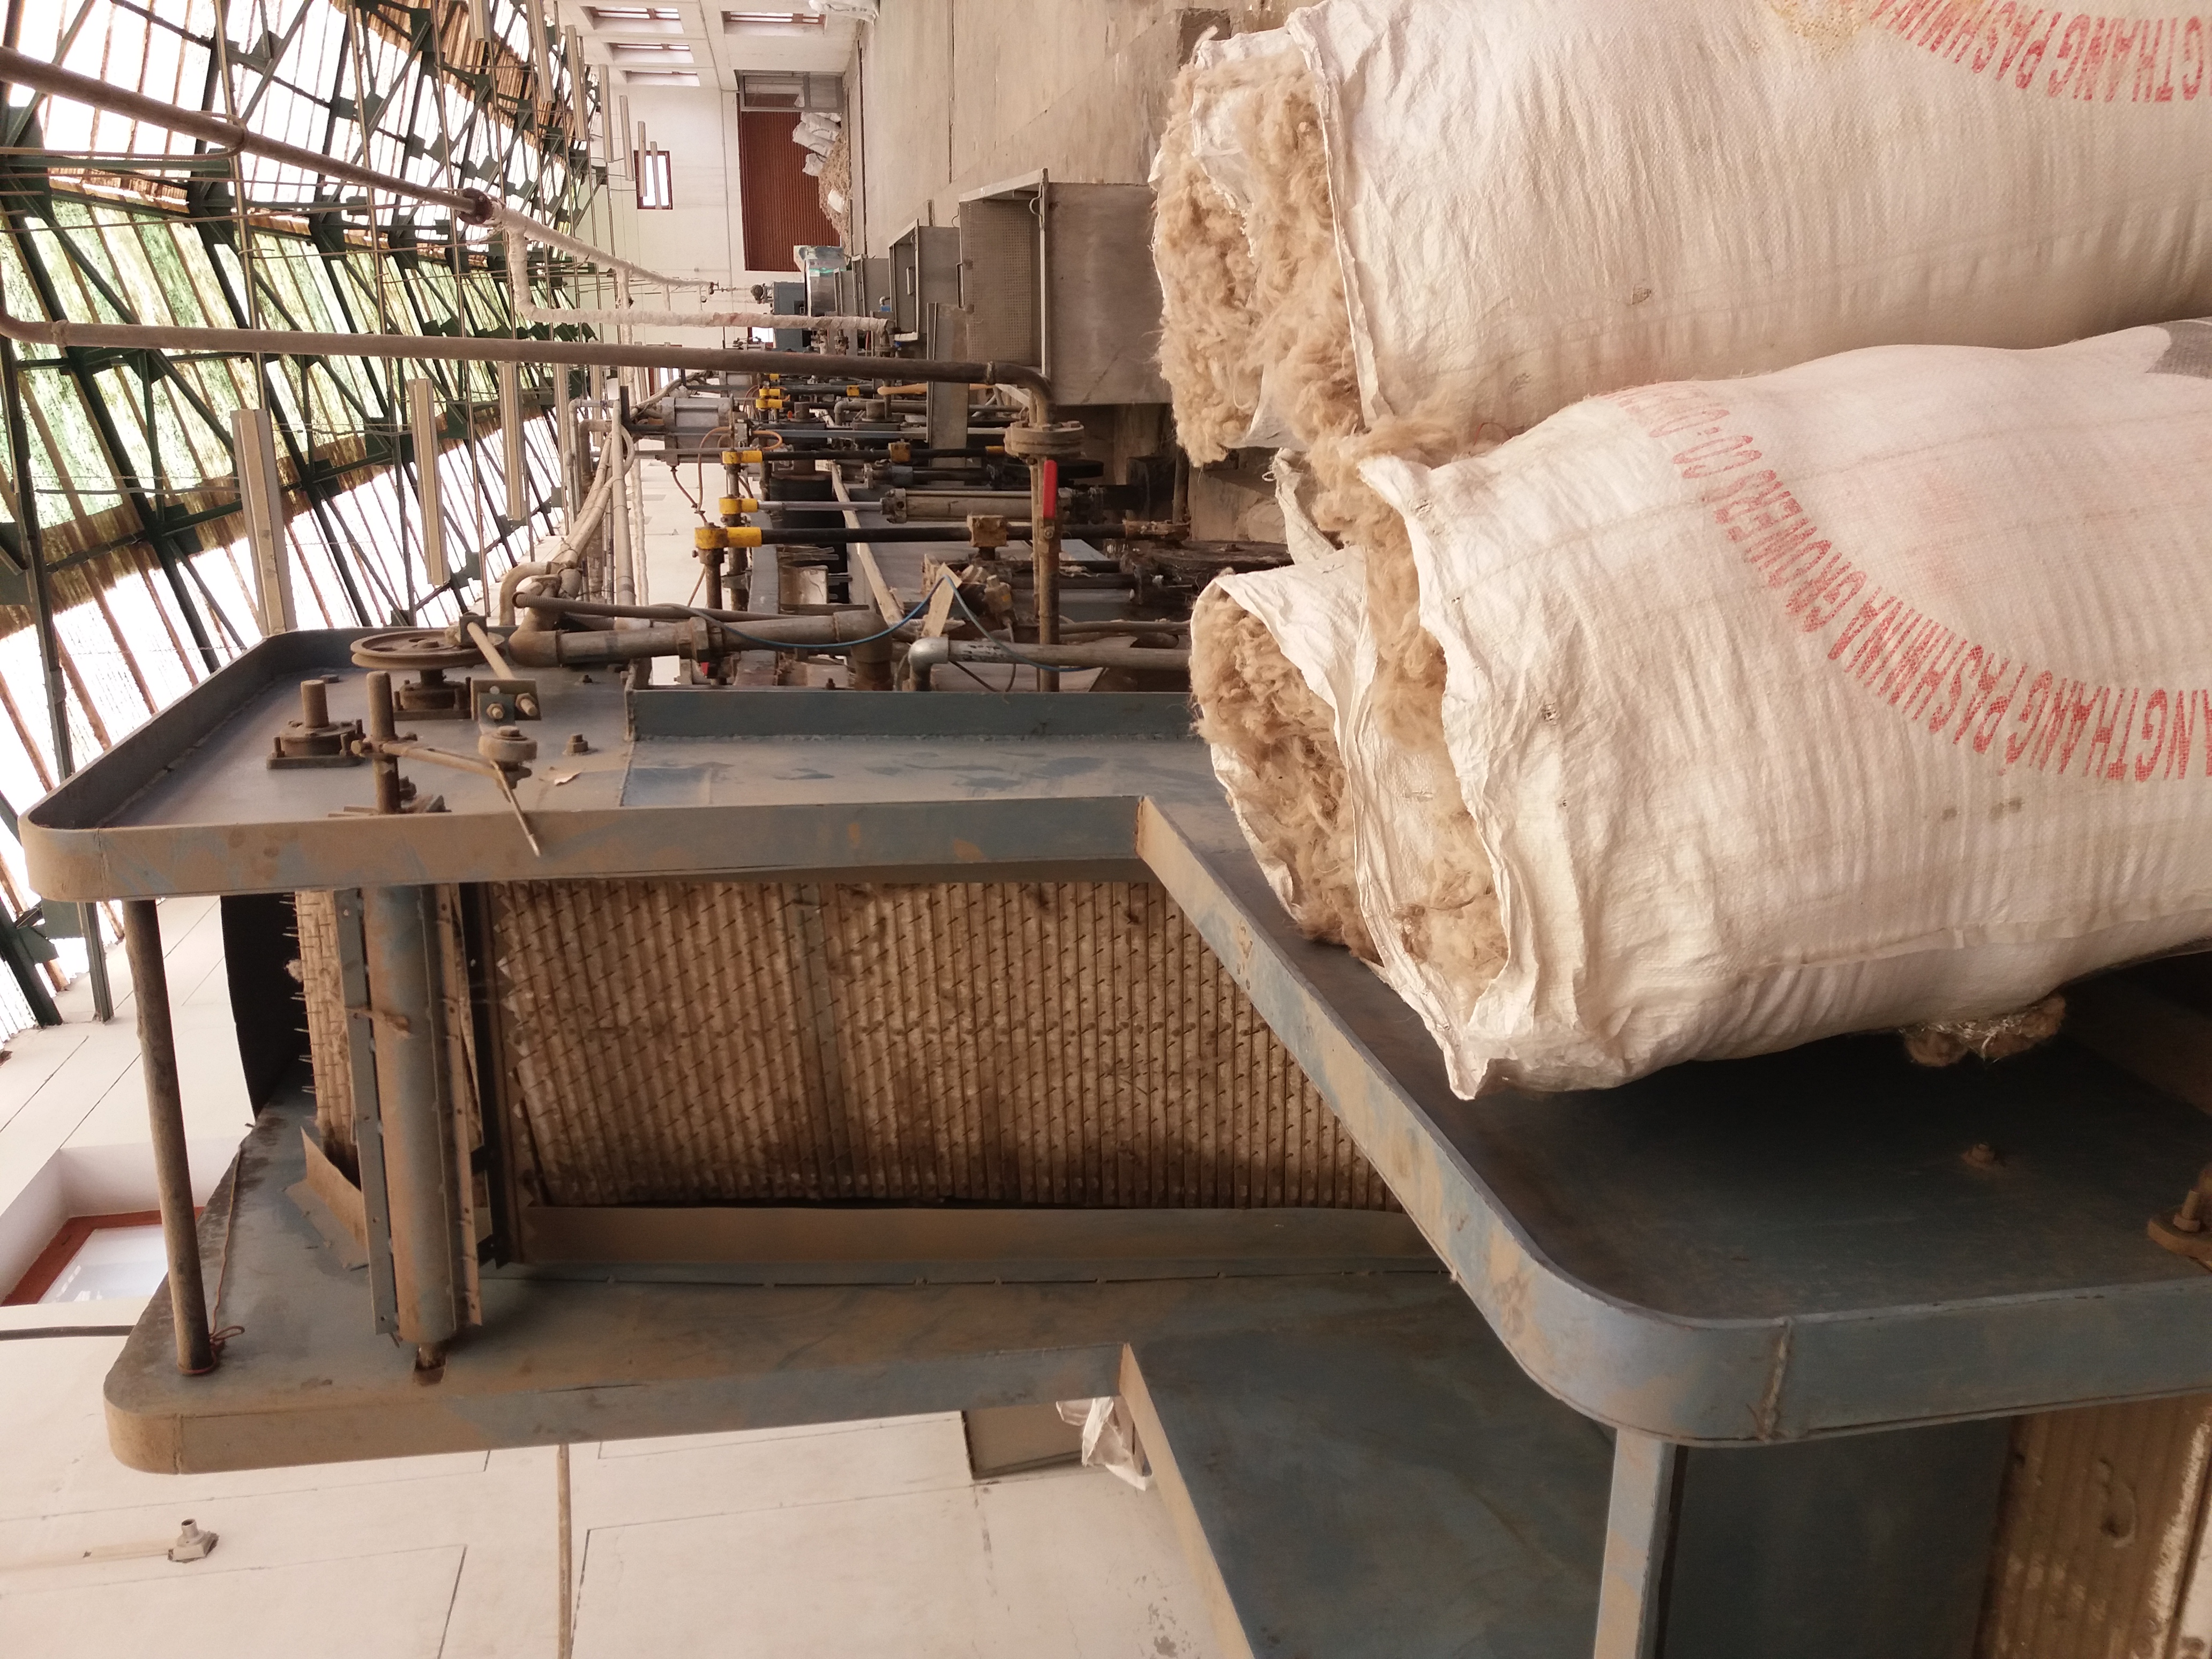 Processing of pashmina wool, Leh